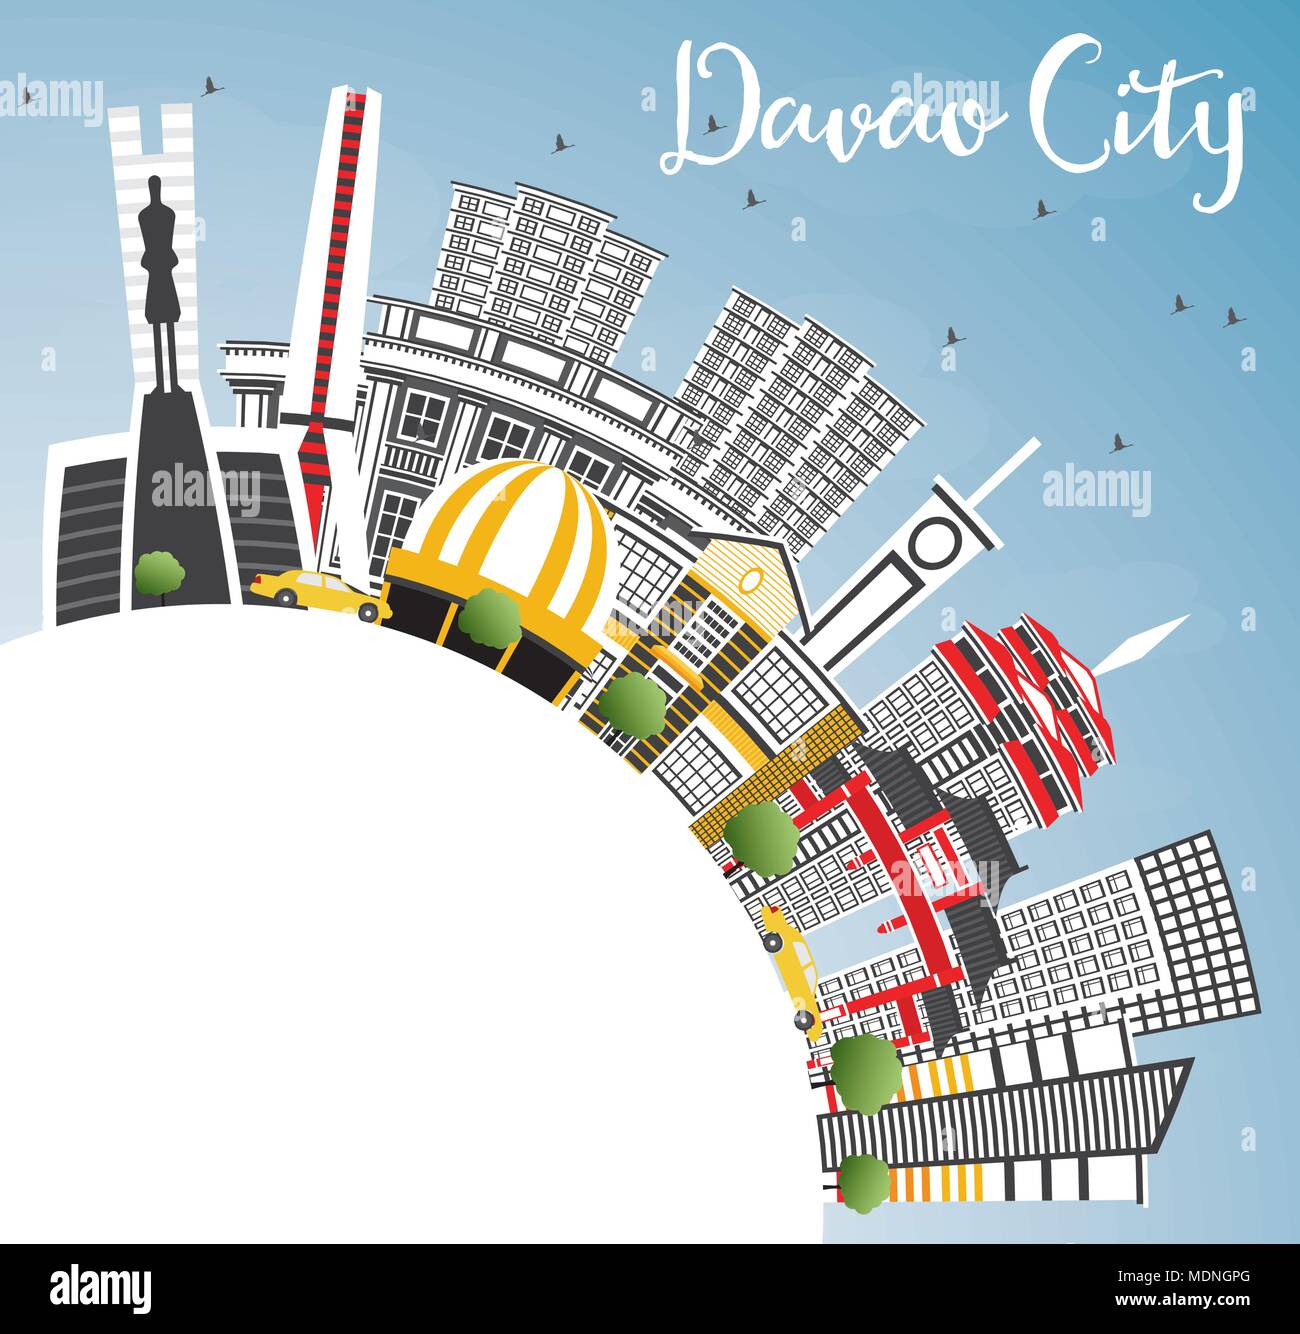 Davao City Philippines Skyline avec bâtiments gris, ciel bleu et copier l'espace. Vector Illustration. Les voyages d'affaires et tourisme Illustration Illustration de Vecteur